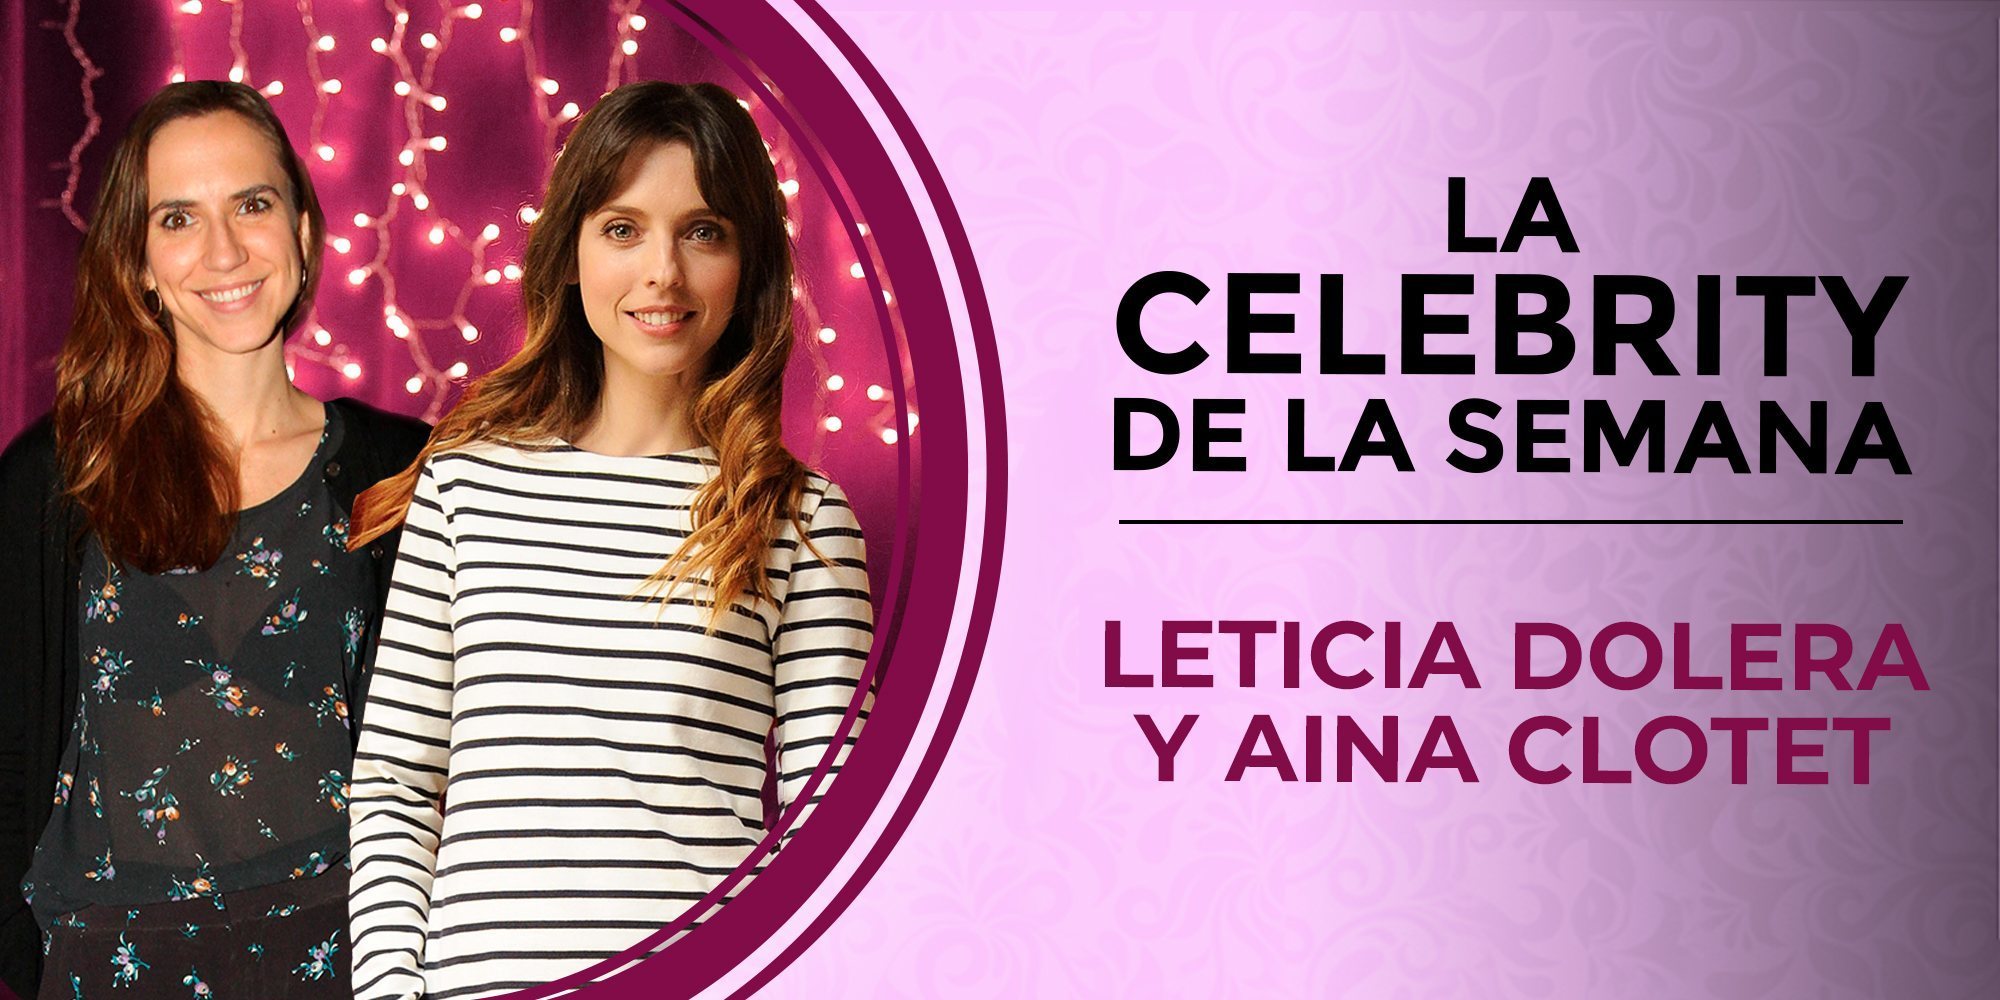 Leticia Dolera y Aina Clotet, las celebs de la semana tras el polémico despido